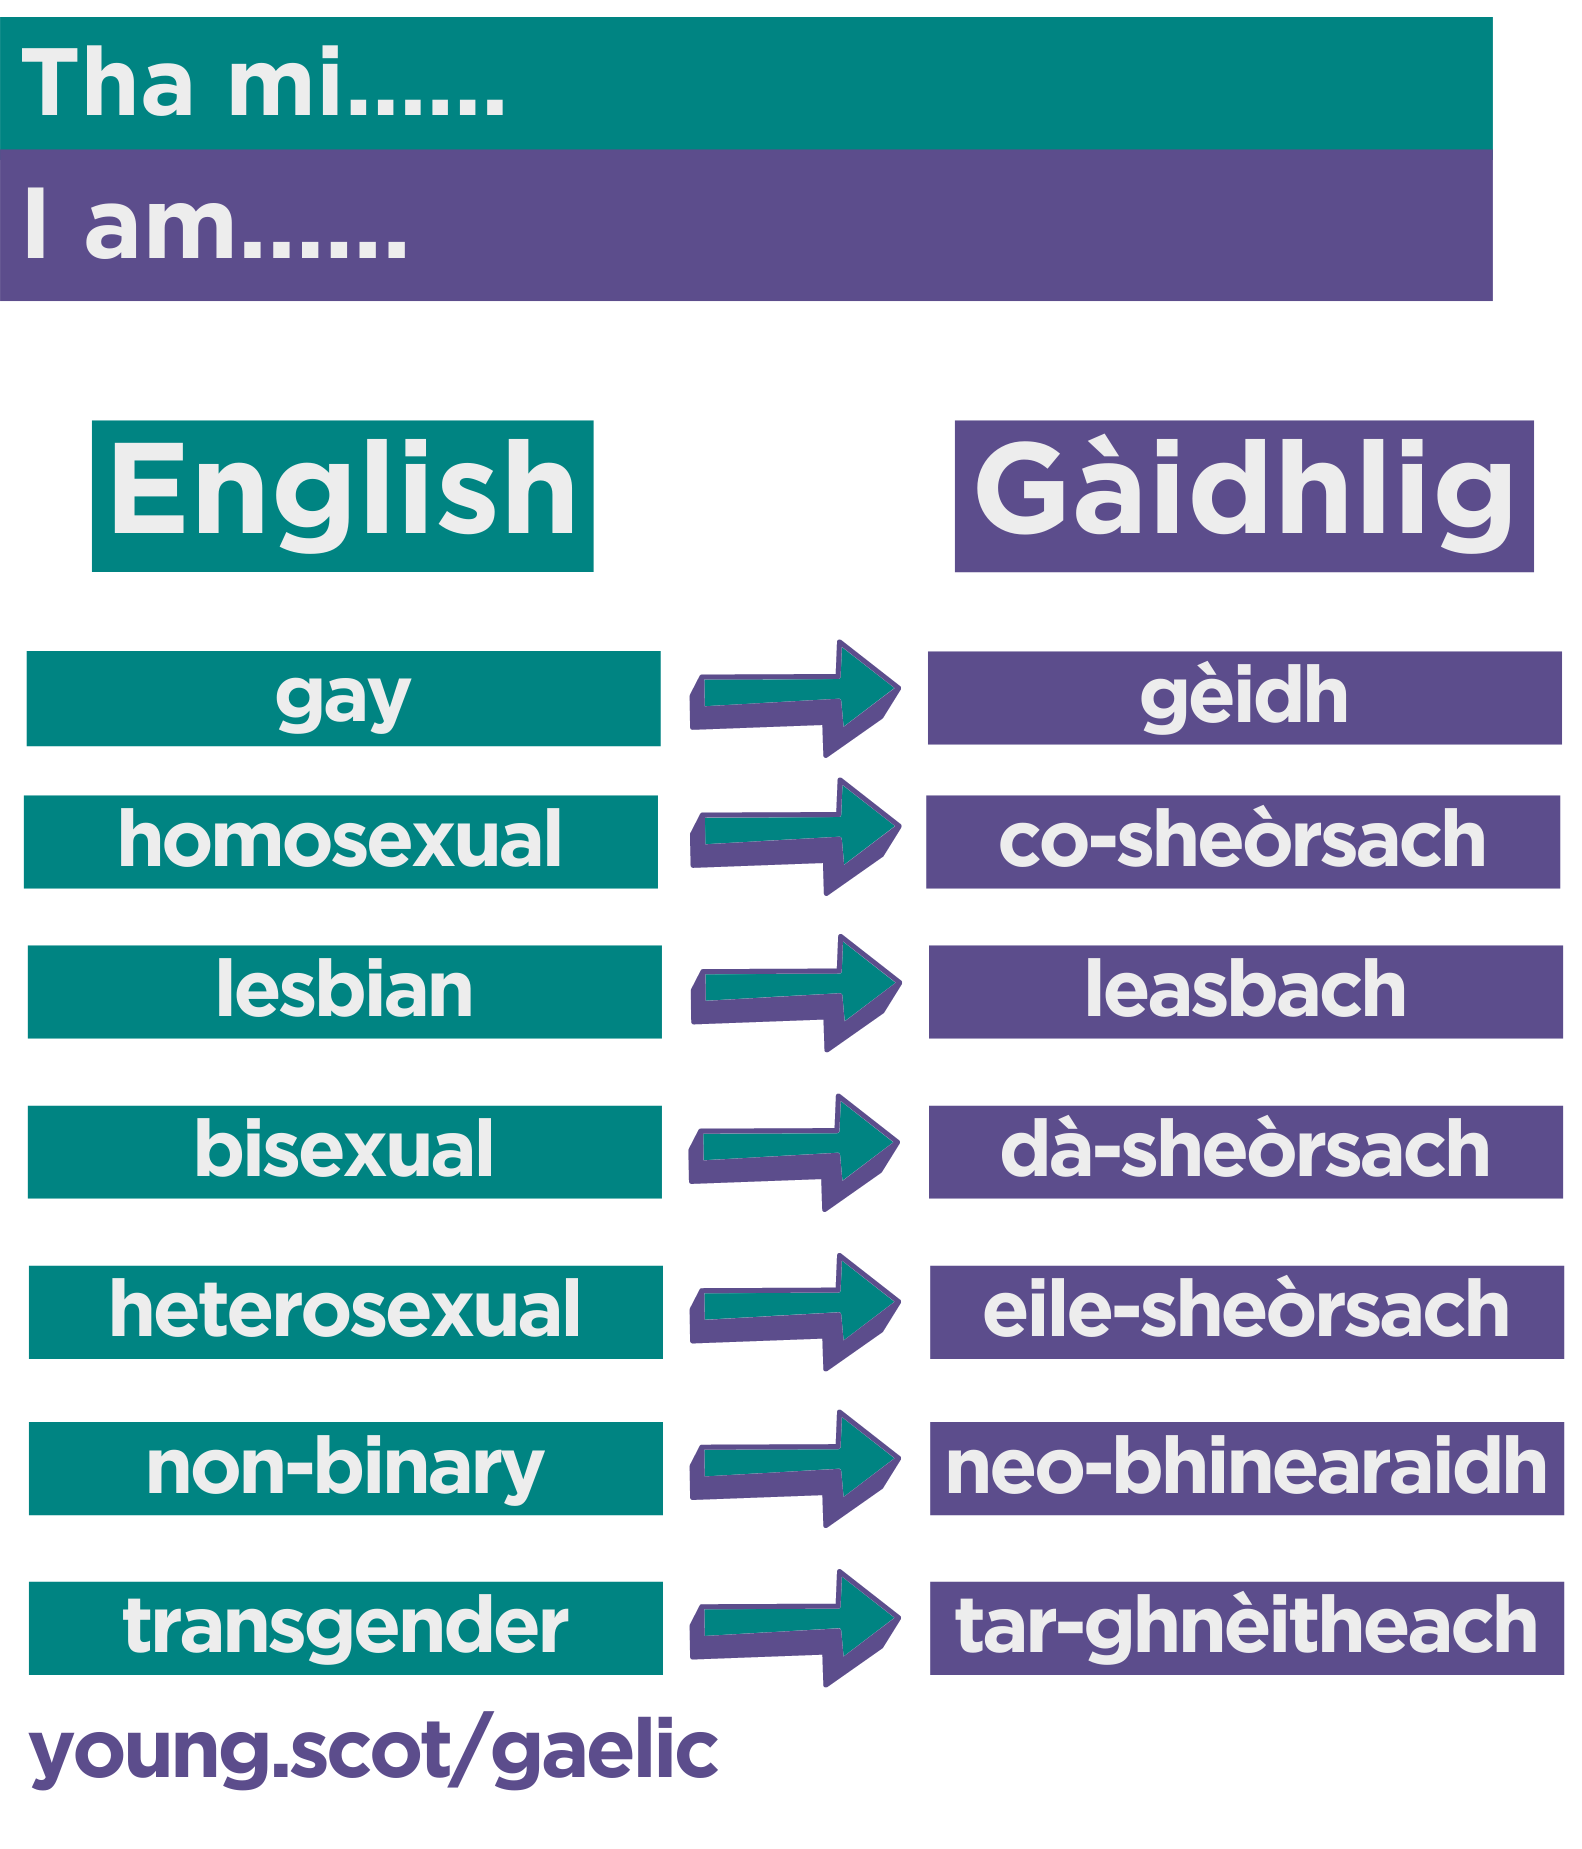 gay = gèidh homosexual = co-sheòrsach lesbian = leasbach bisexual = dà-sheòrsach heterosexual = eile-sheòrsach non-binary = neo-bhinearaidh